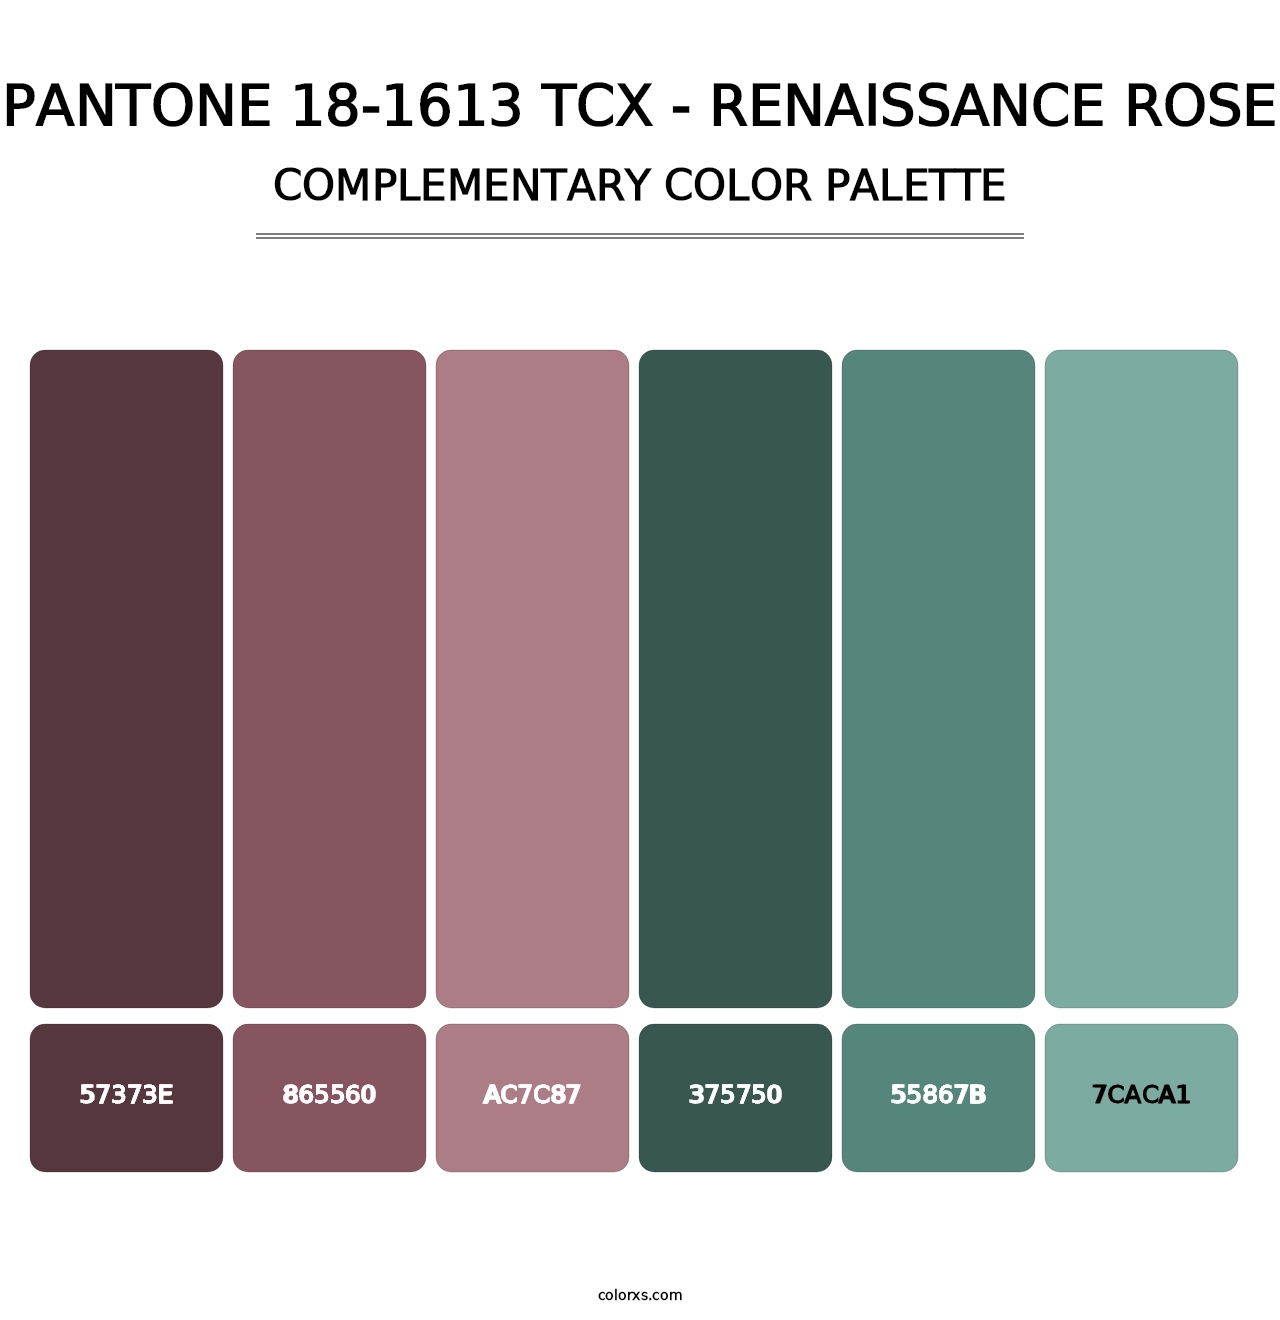 PANTONE 18-1613 TCX - Renaissance Rose - Complementary Color Palette